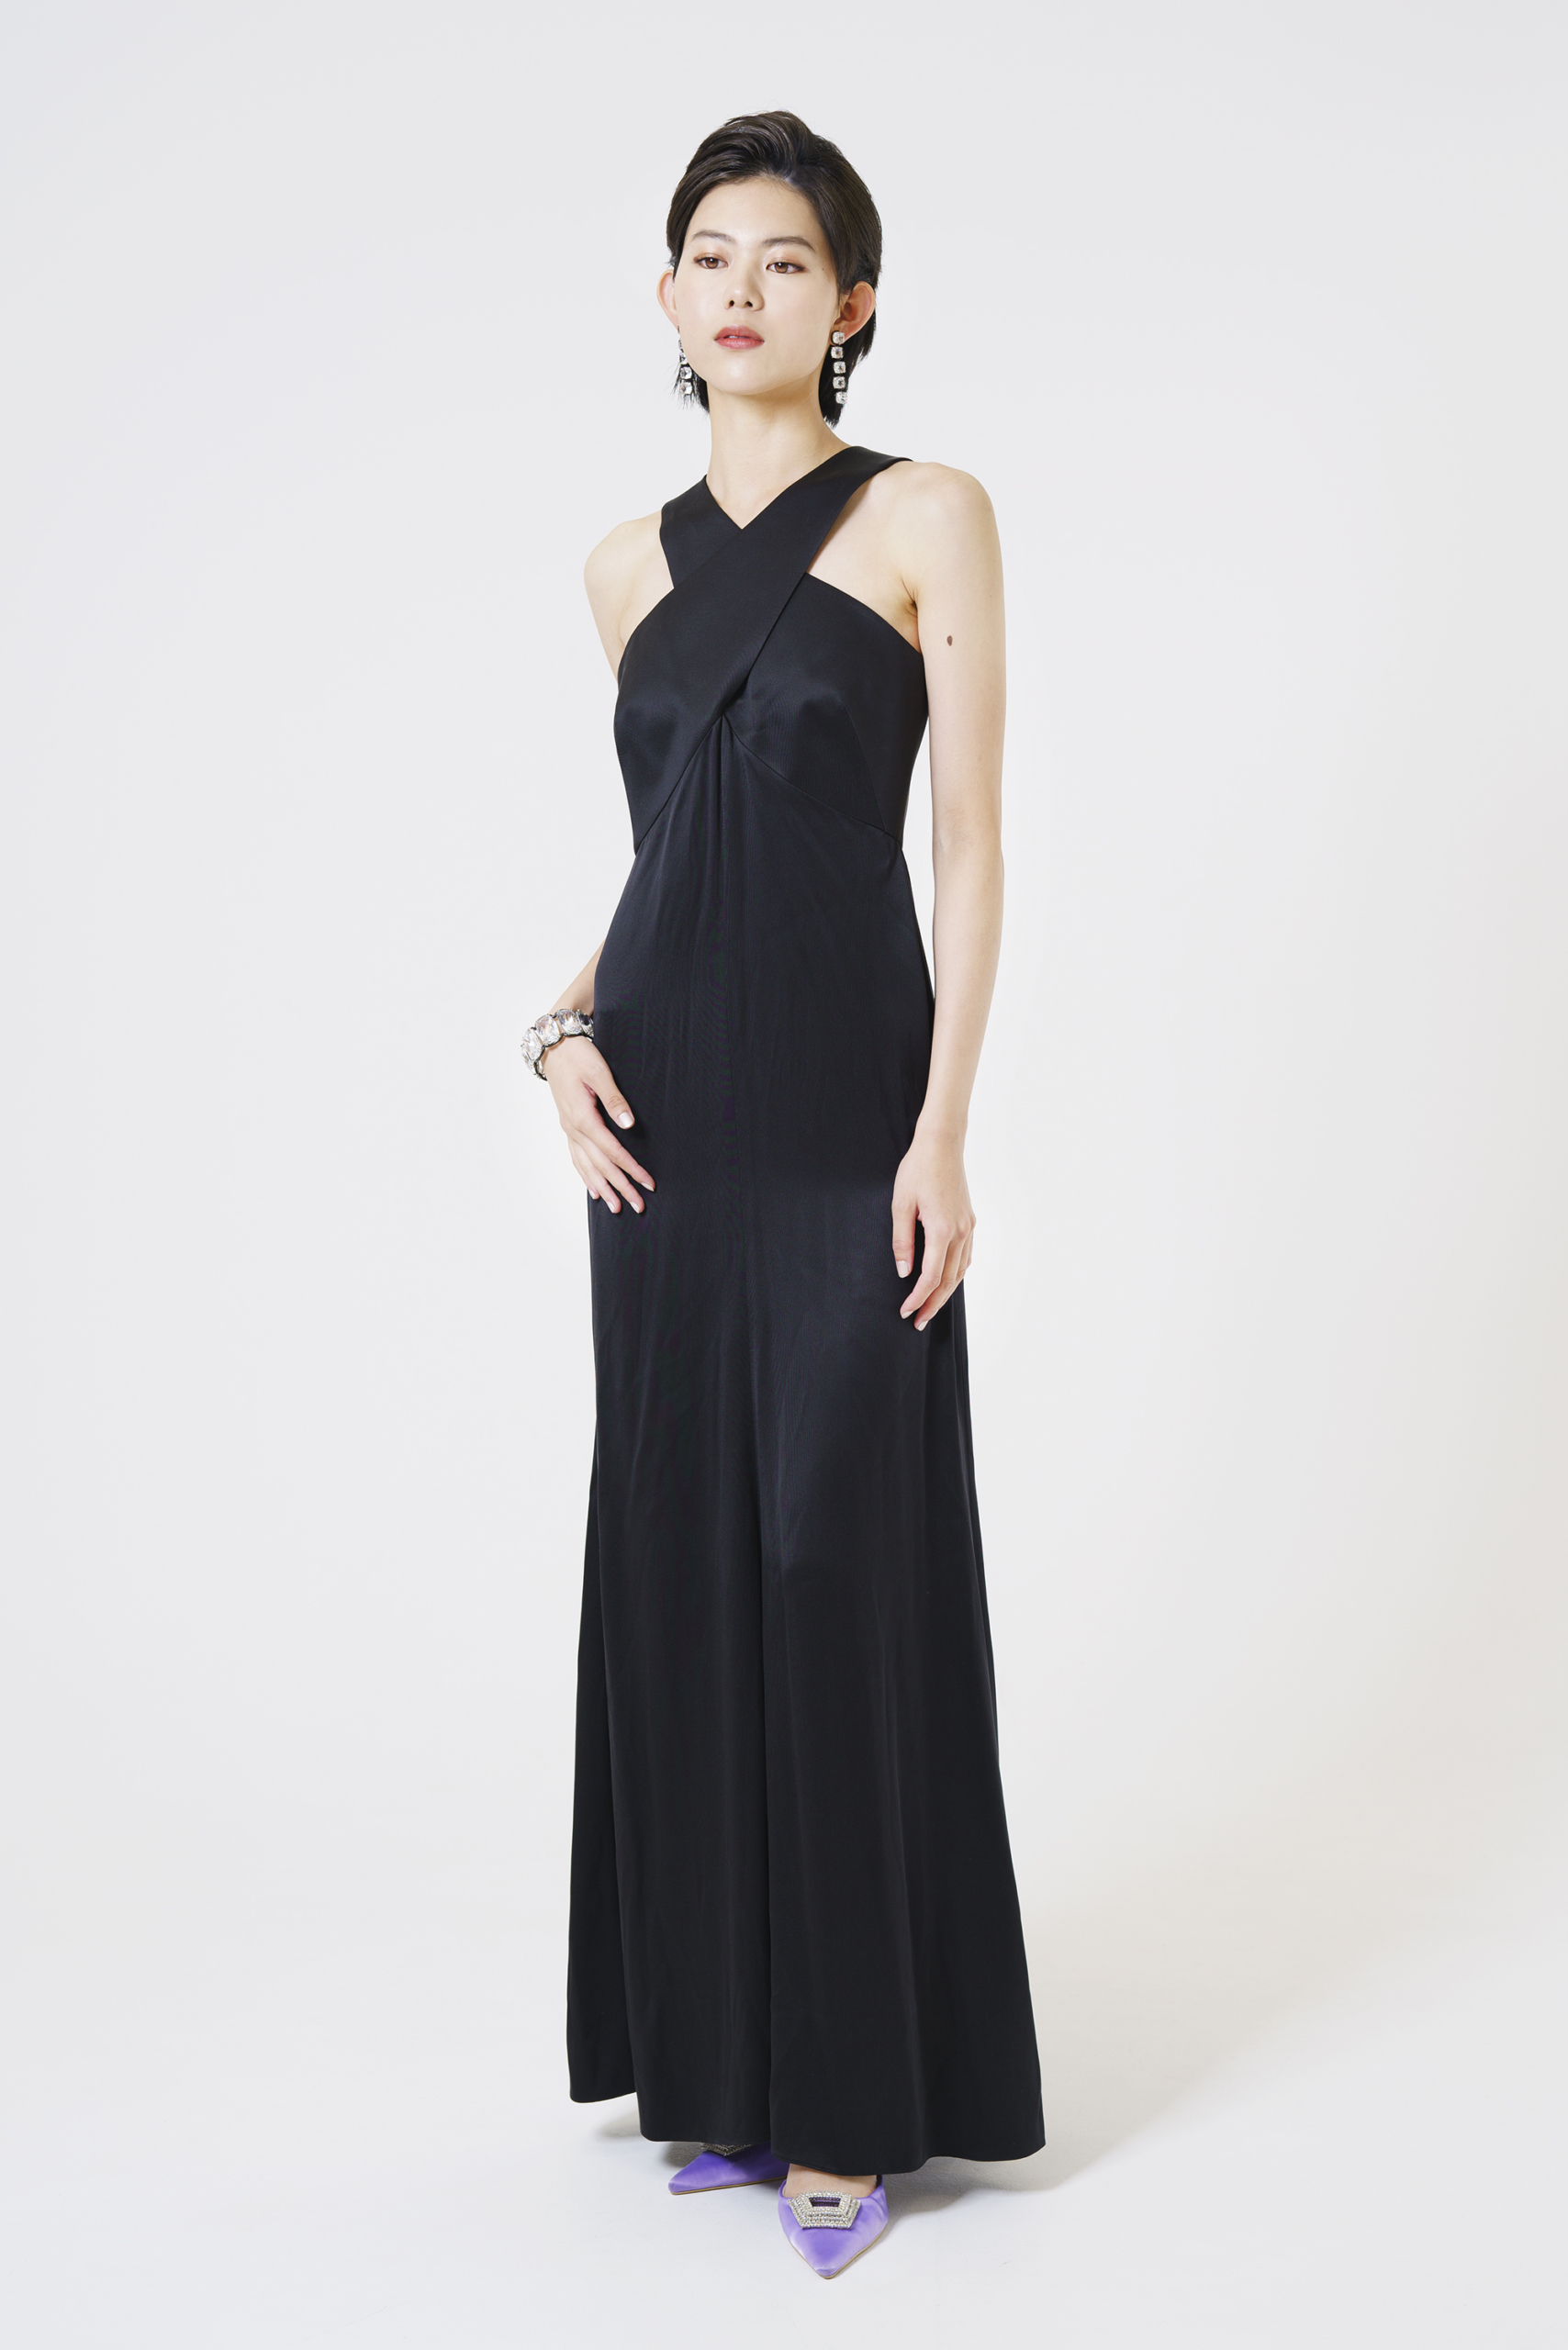 GIORGIO ARMANI 黒ロングドレス |ハイブランド・海外ブランドのドレス 